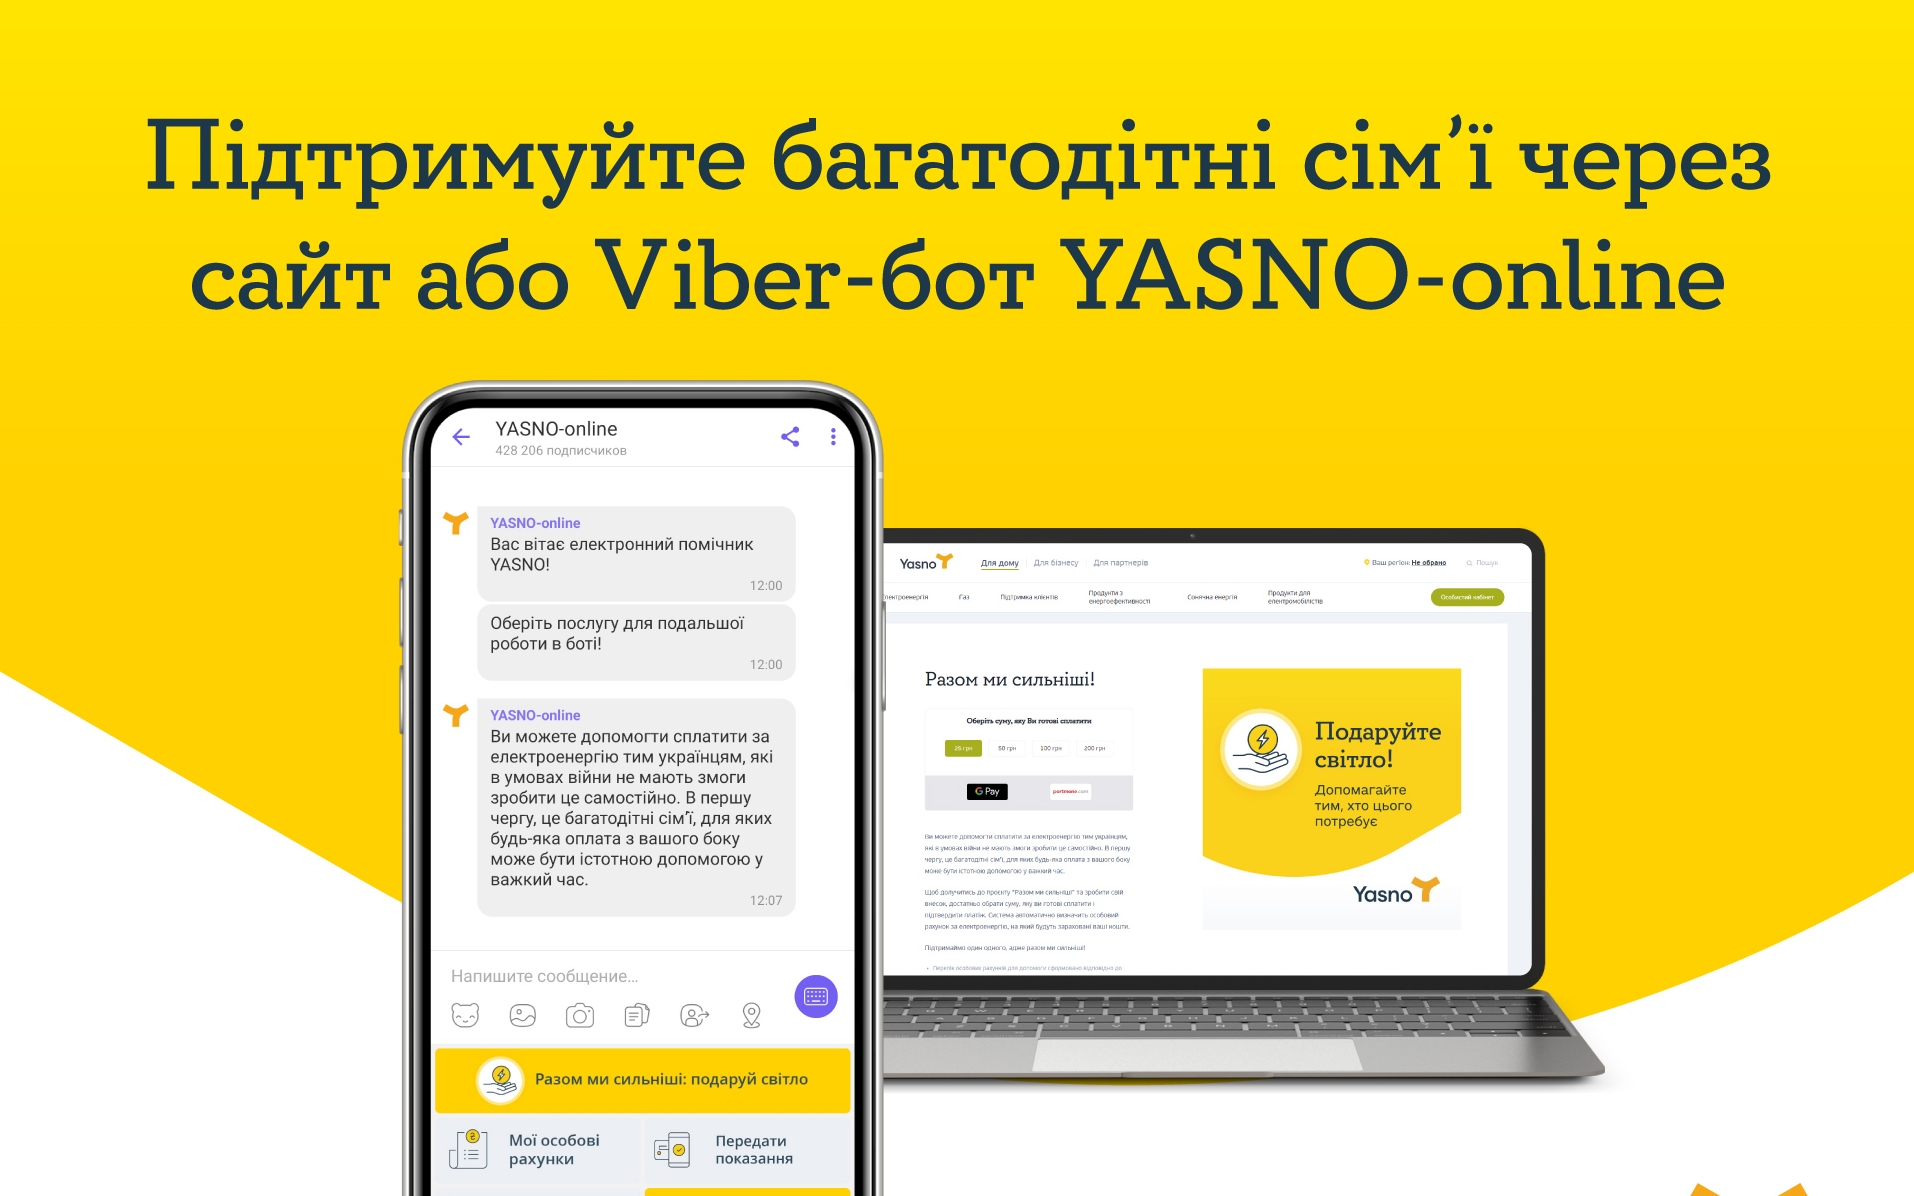 Через Viber-бот YASNO-online можна подарувати світло 